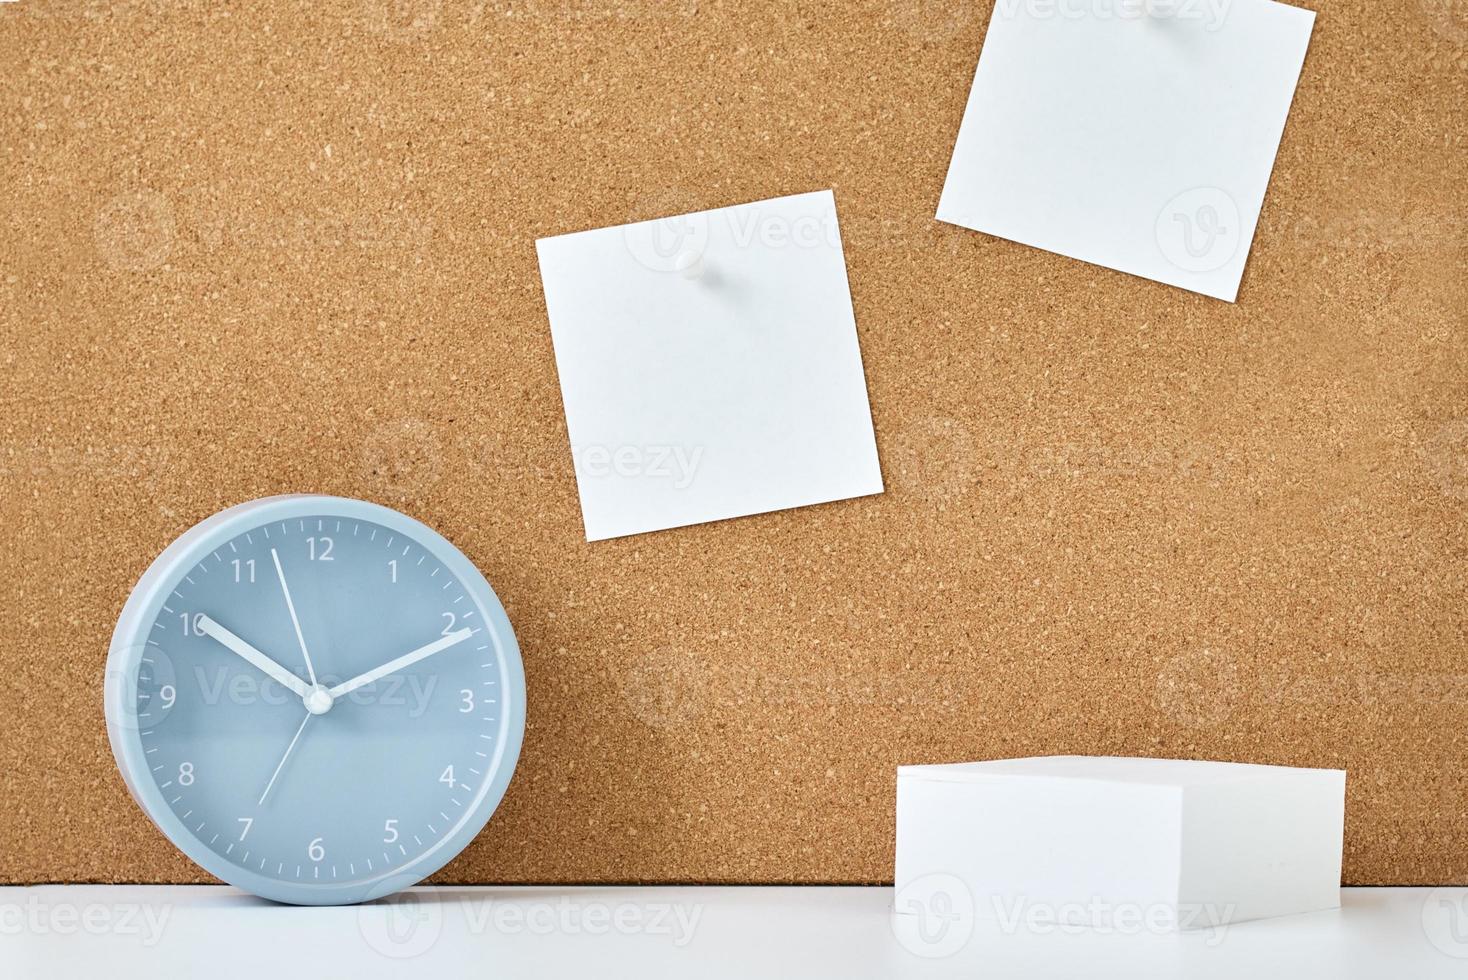 kleverig aantekeningen Aan een kurk bord en alarm klok in werkplaats kantoor of huis foto